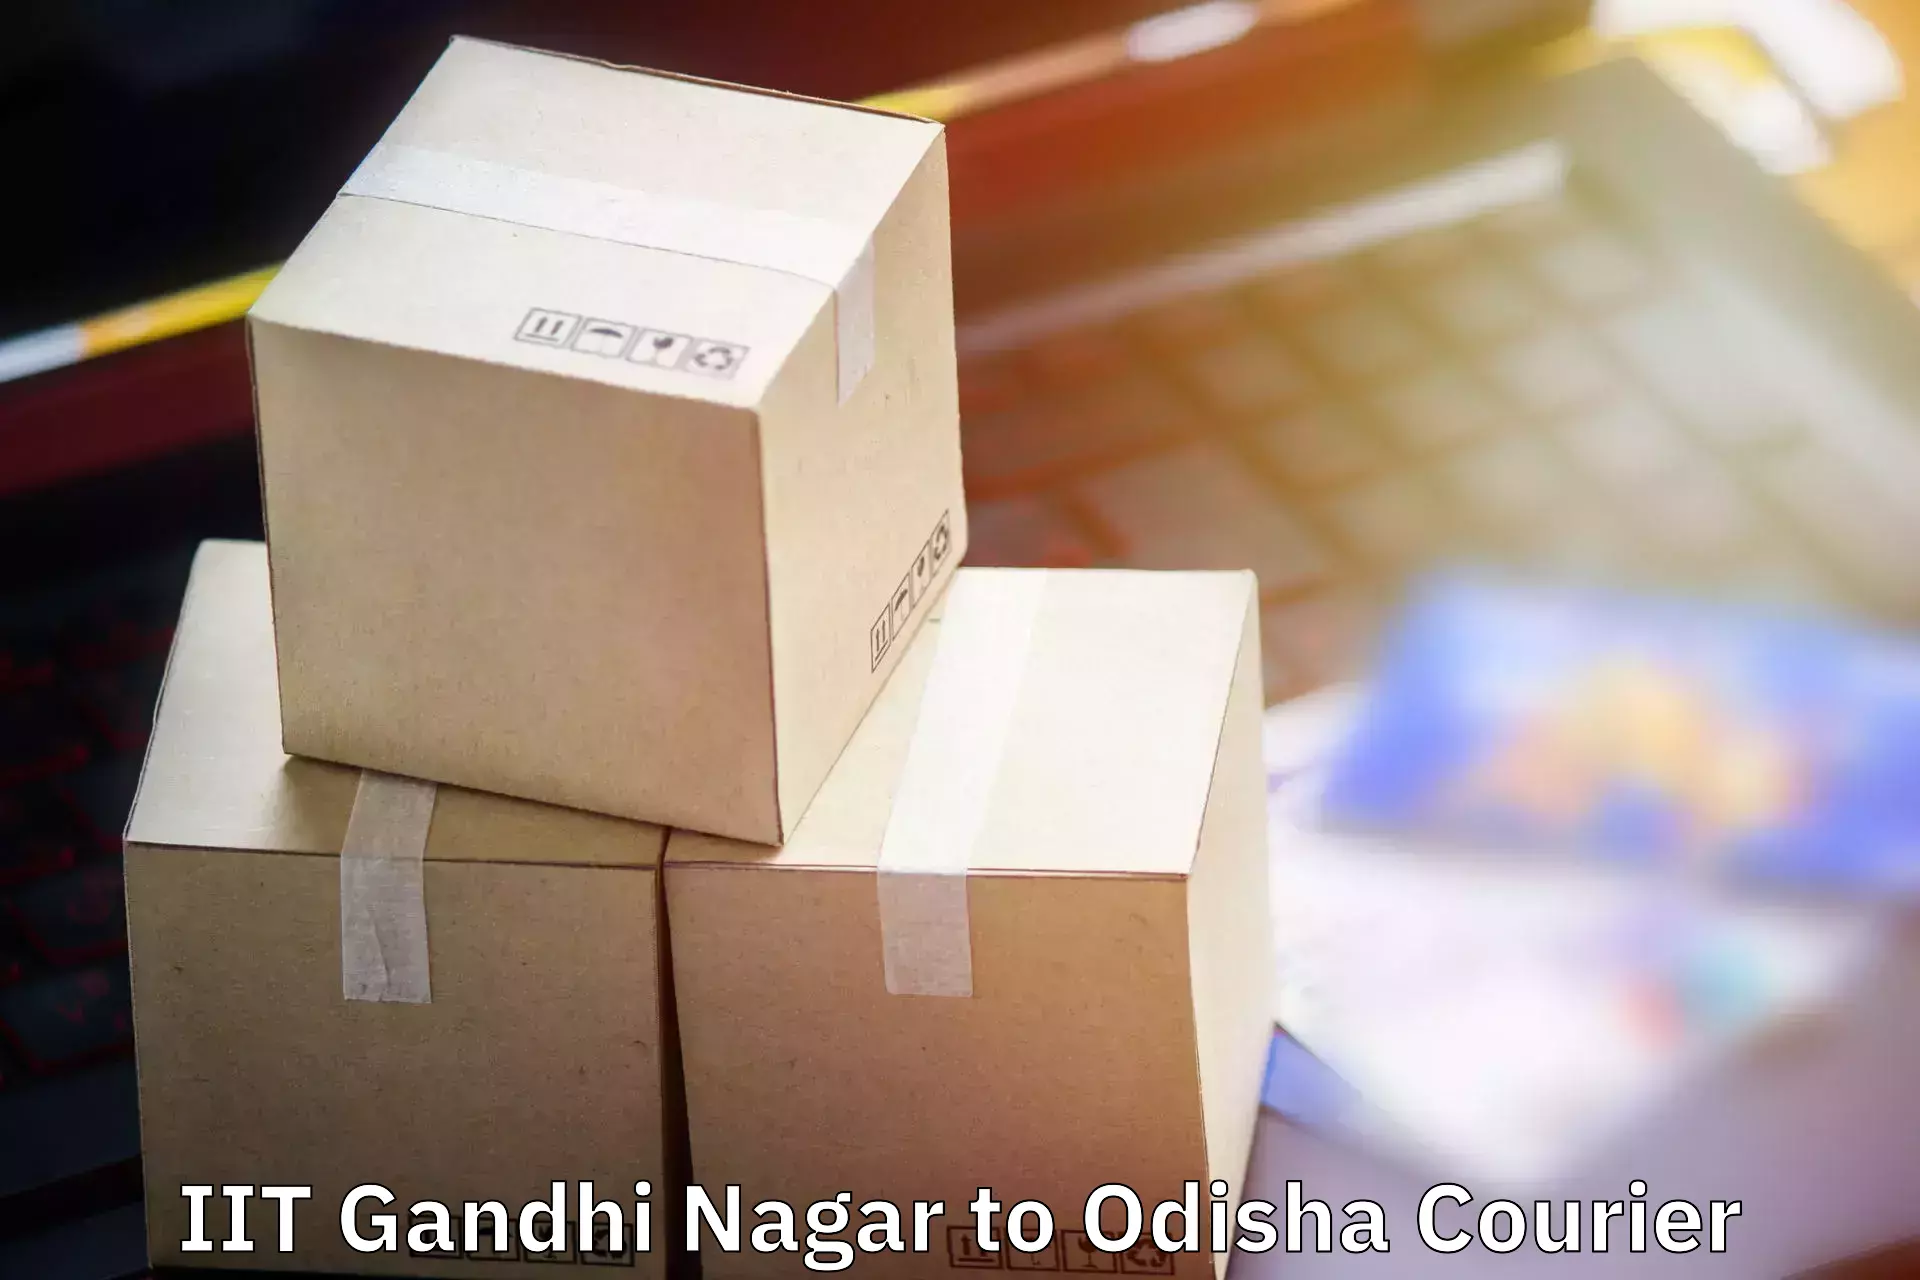 Baggage transport scheduler IIT Gandhi Nagar to Nirakarpur